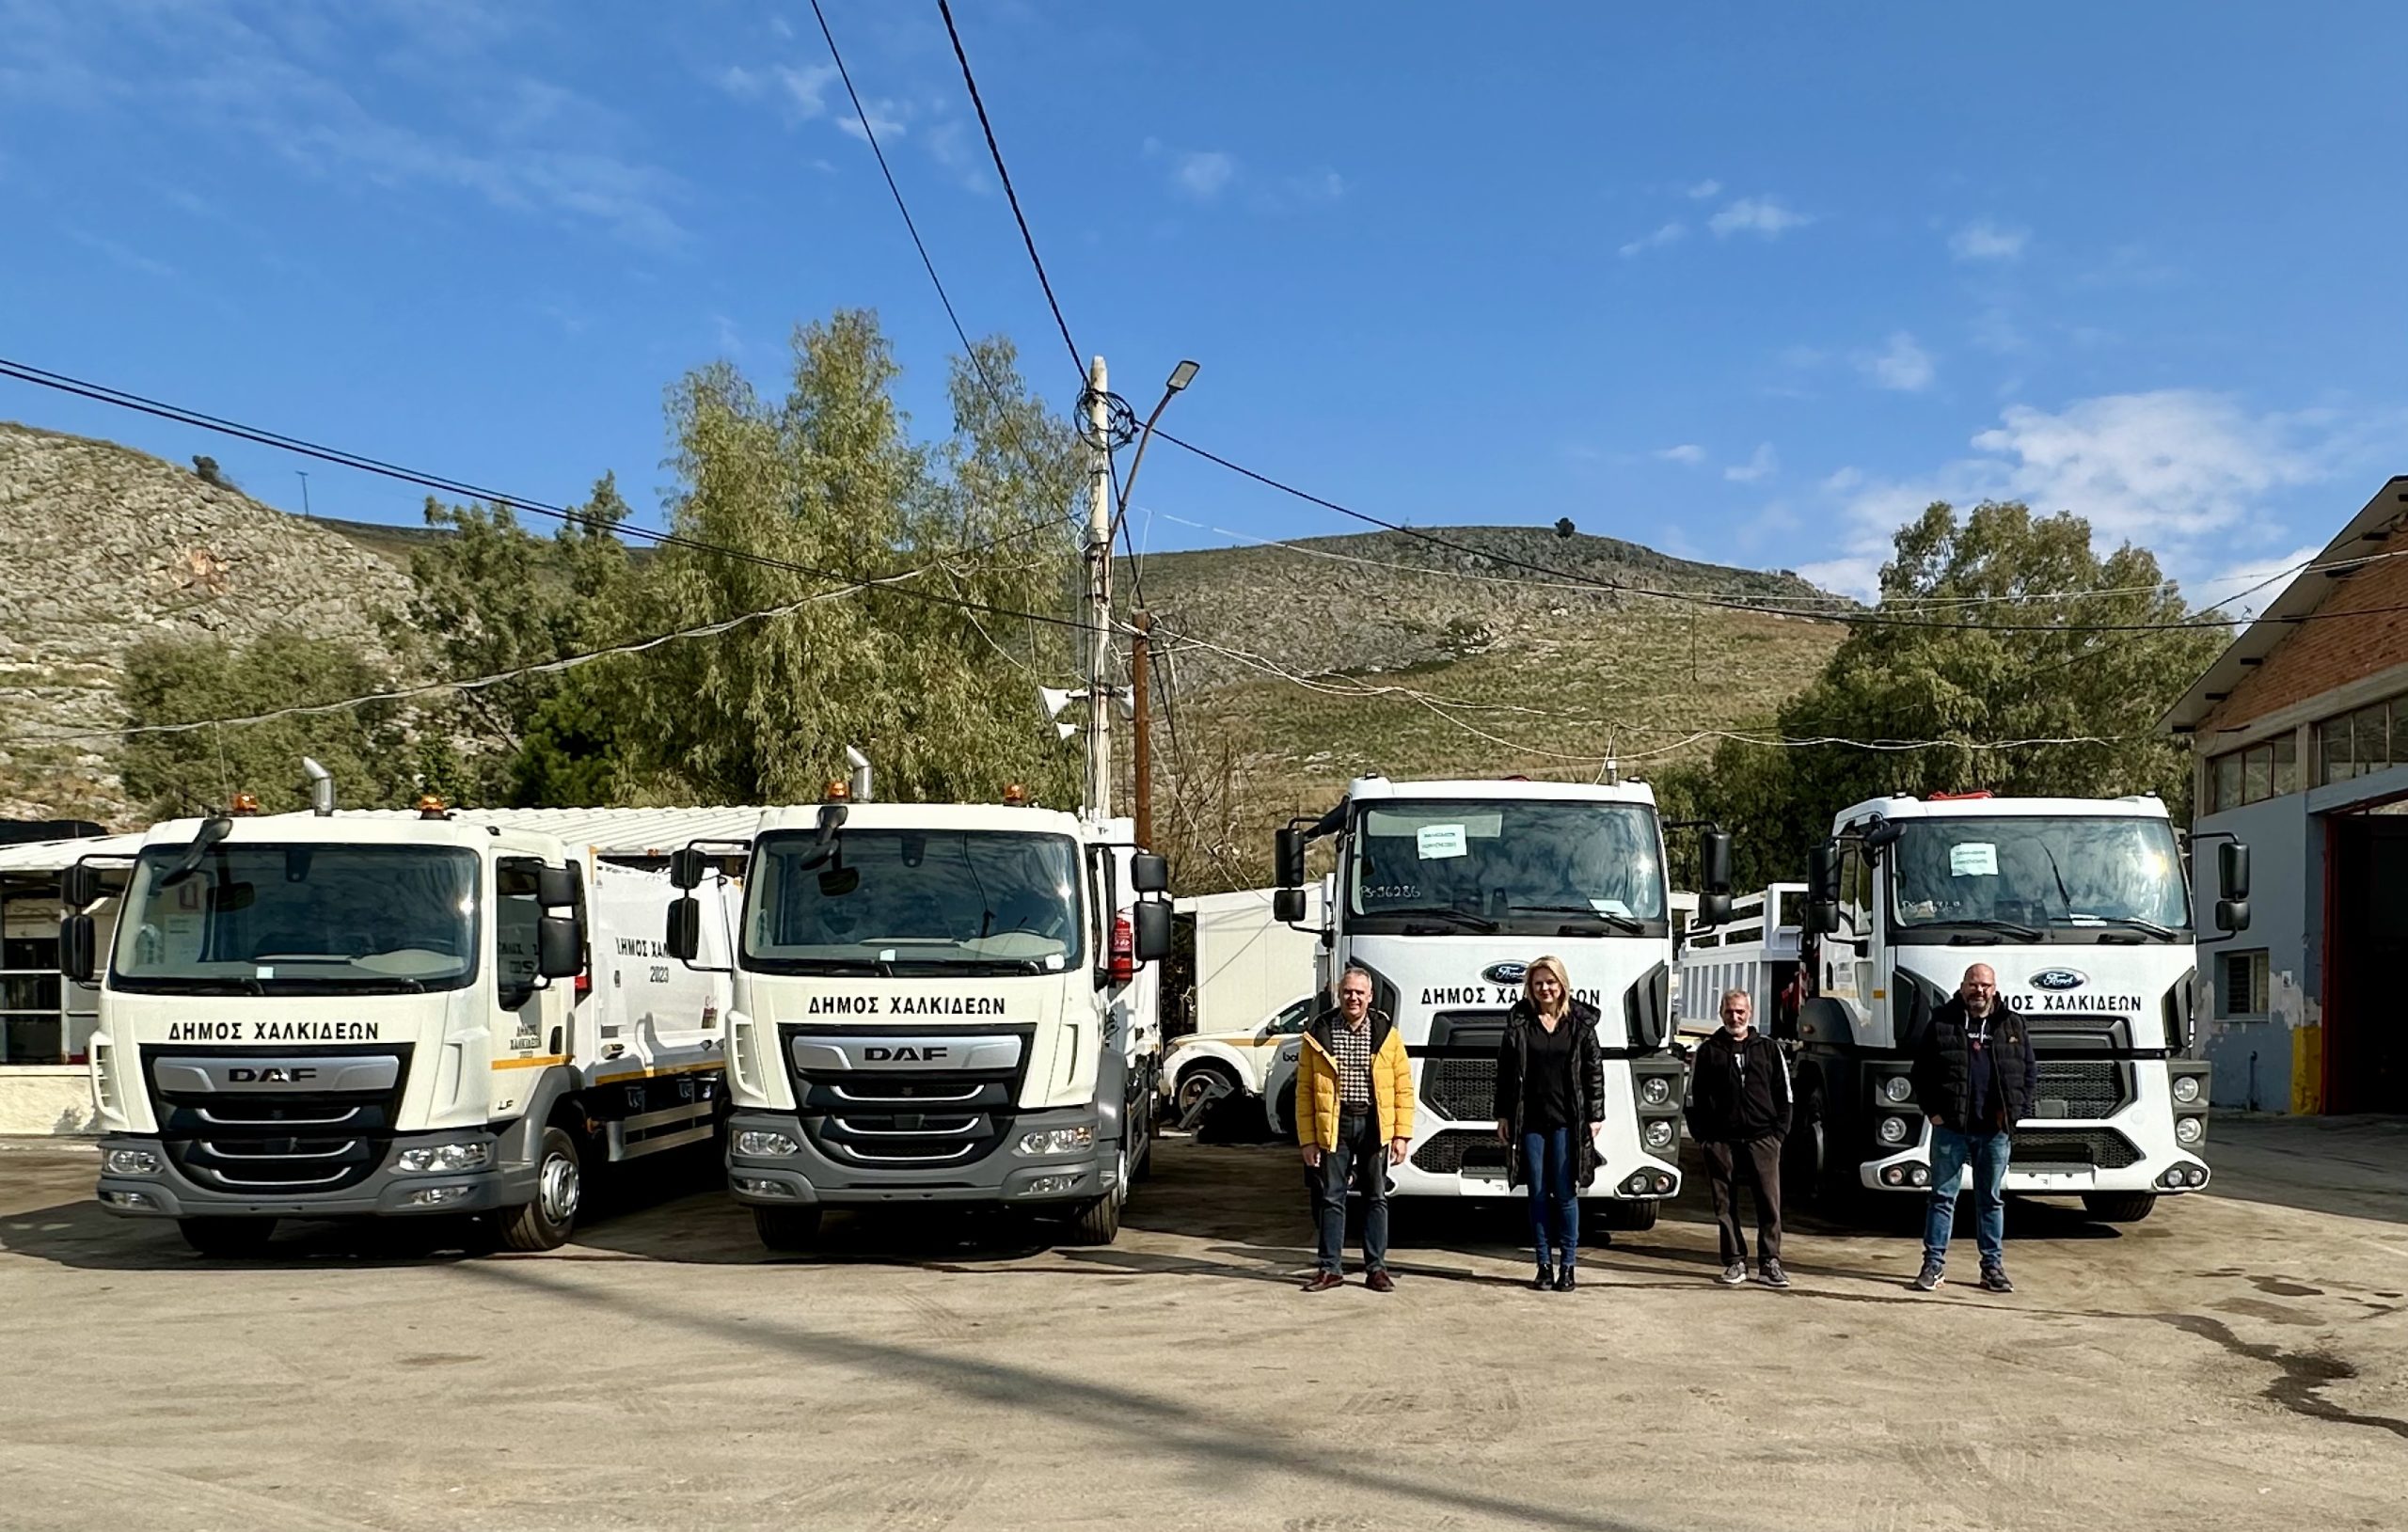 Εύβοια: Παρέλαβε νέα φορτηγά και απορριμματοφόρα ο μεγαλύτερος δήμος